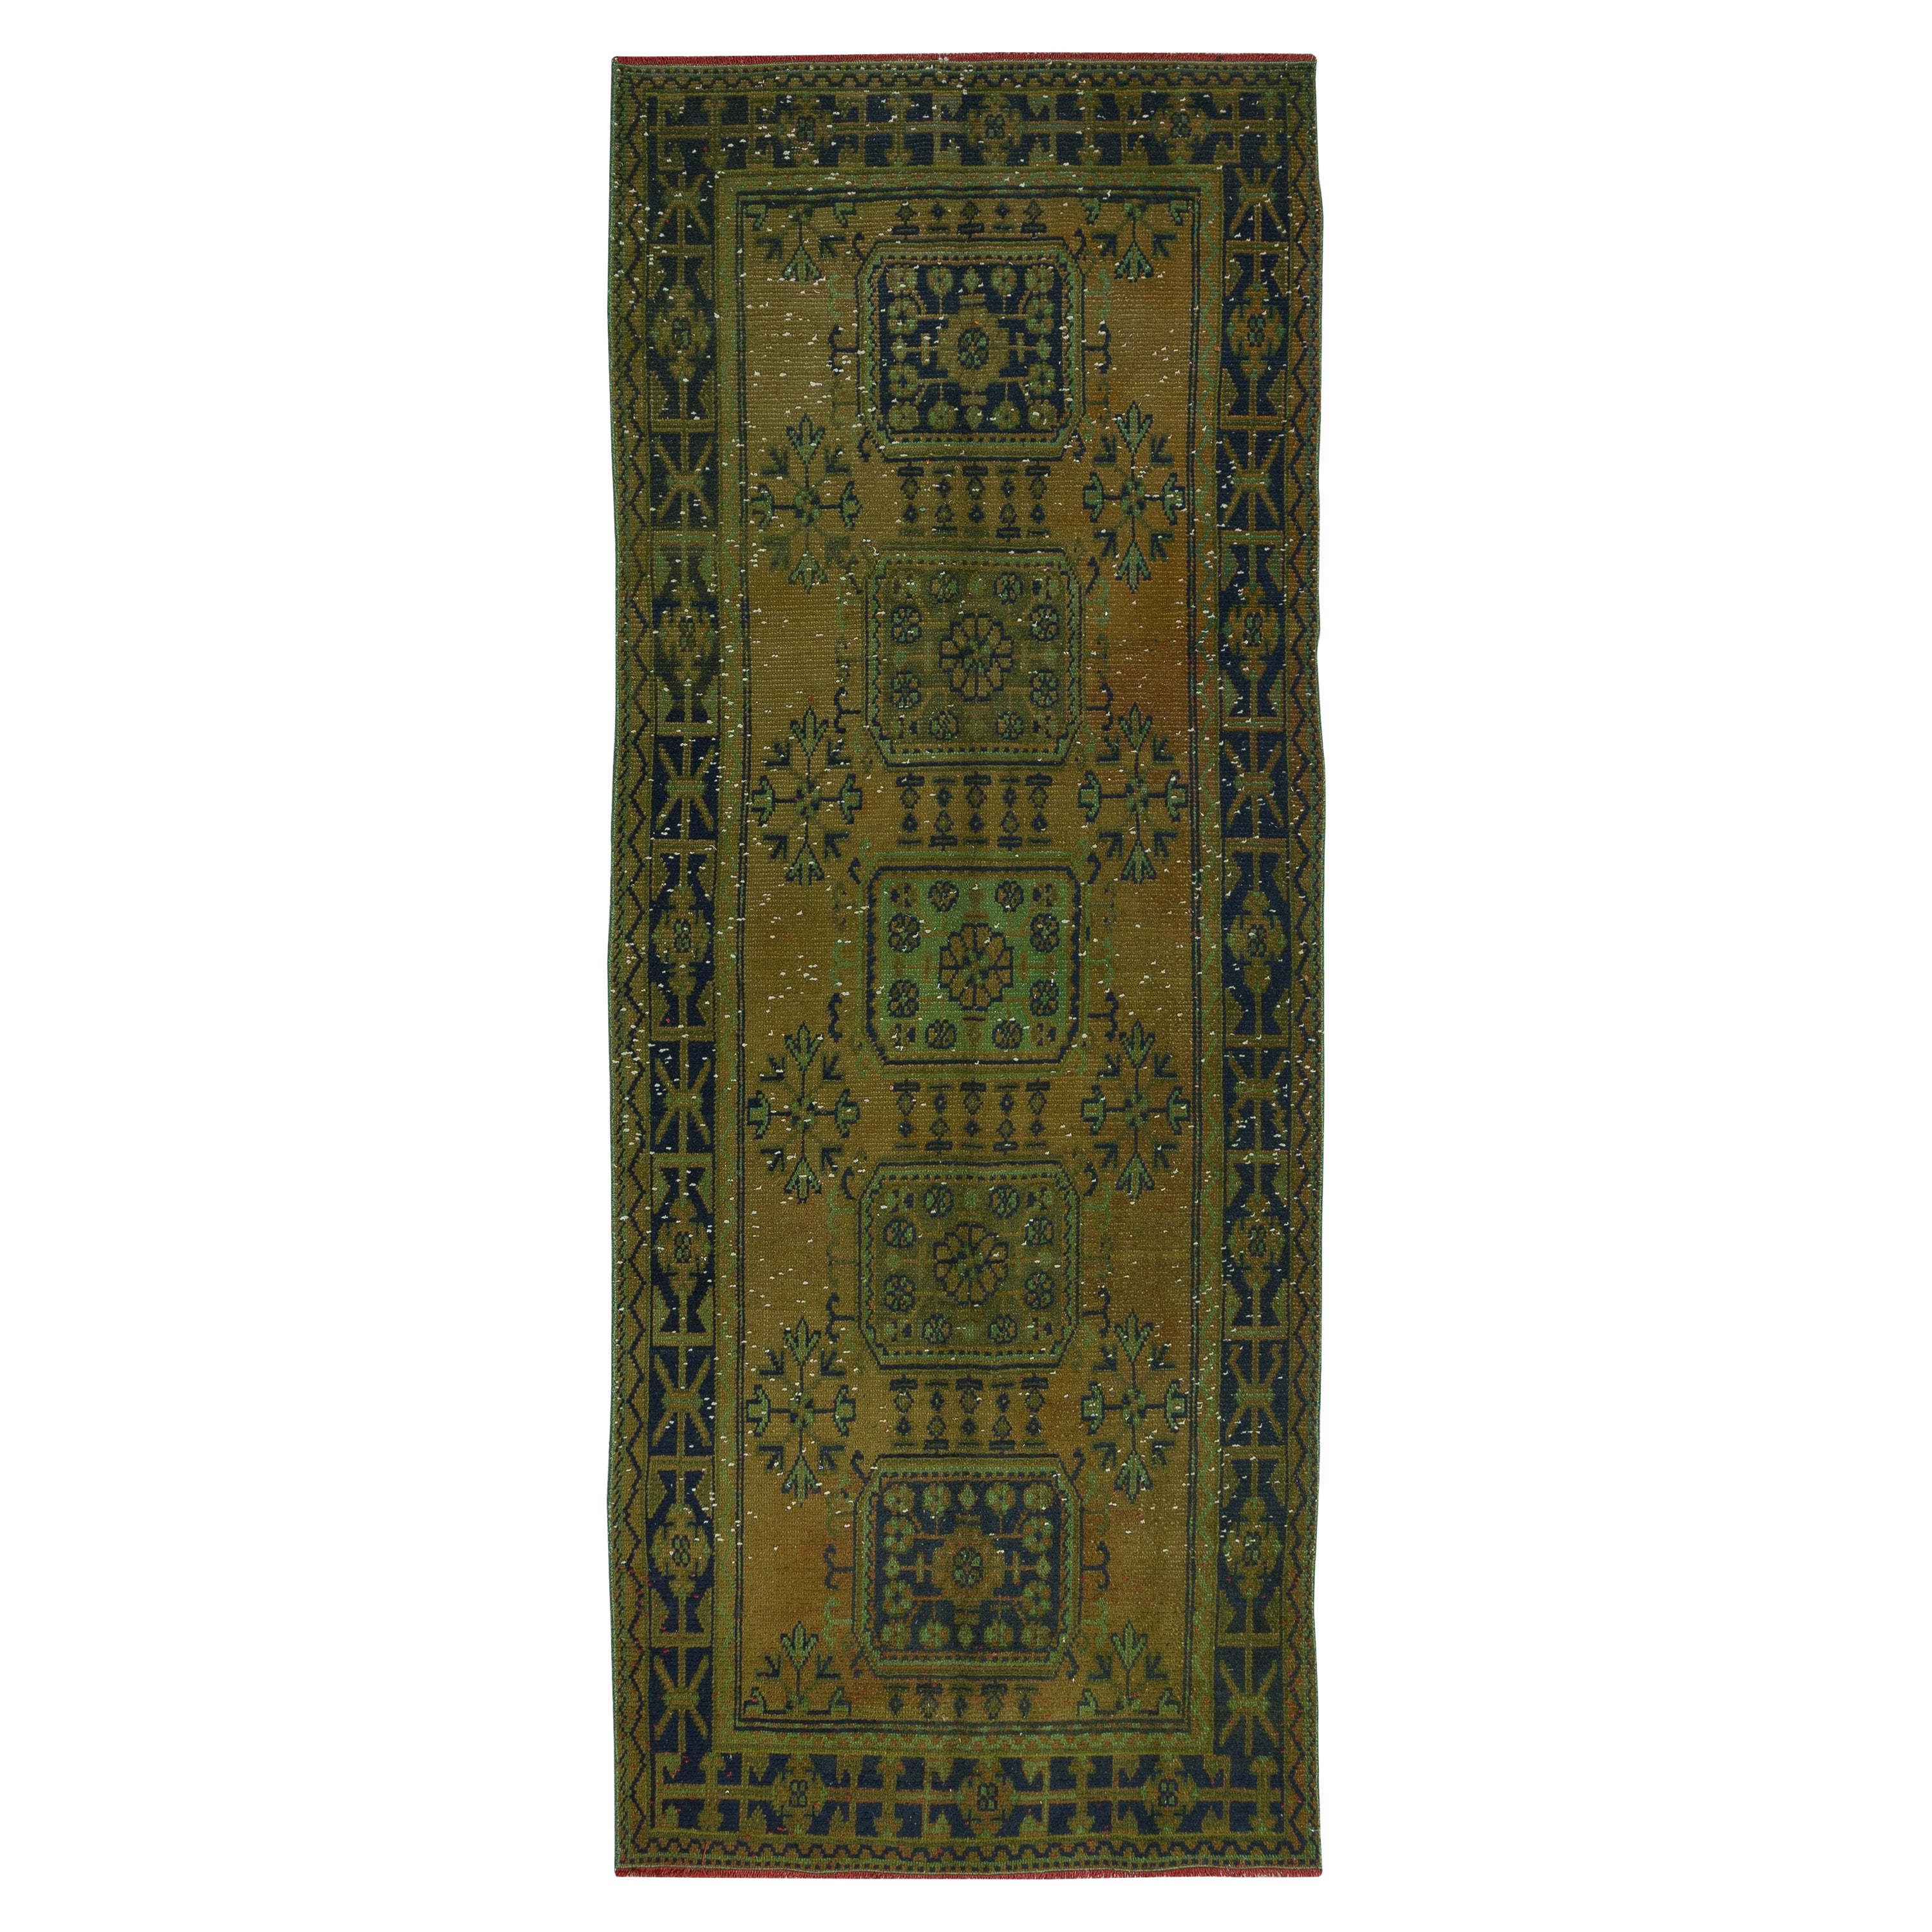 4.5x11.2 Ft Handmade Anatolian Runner Rug for Hallway, Green Corridor Carpet For Sale